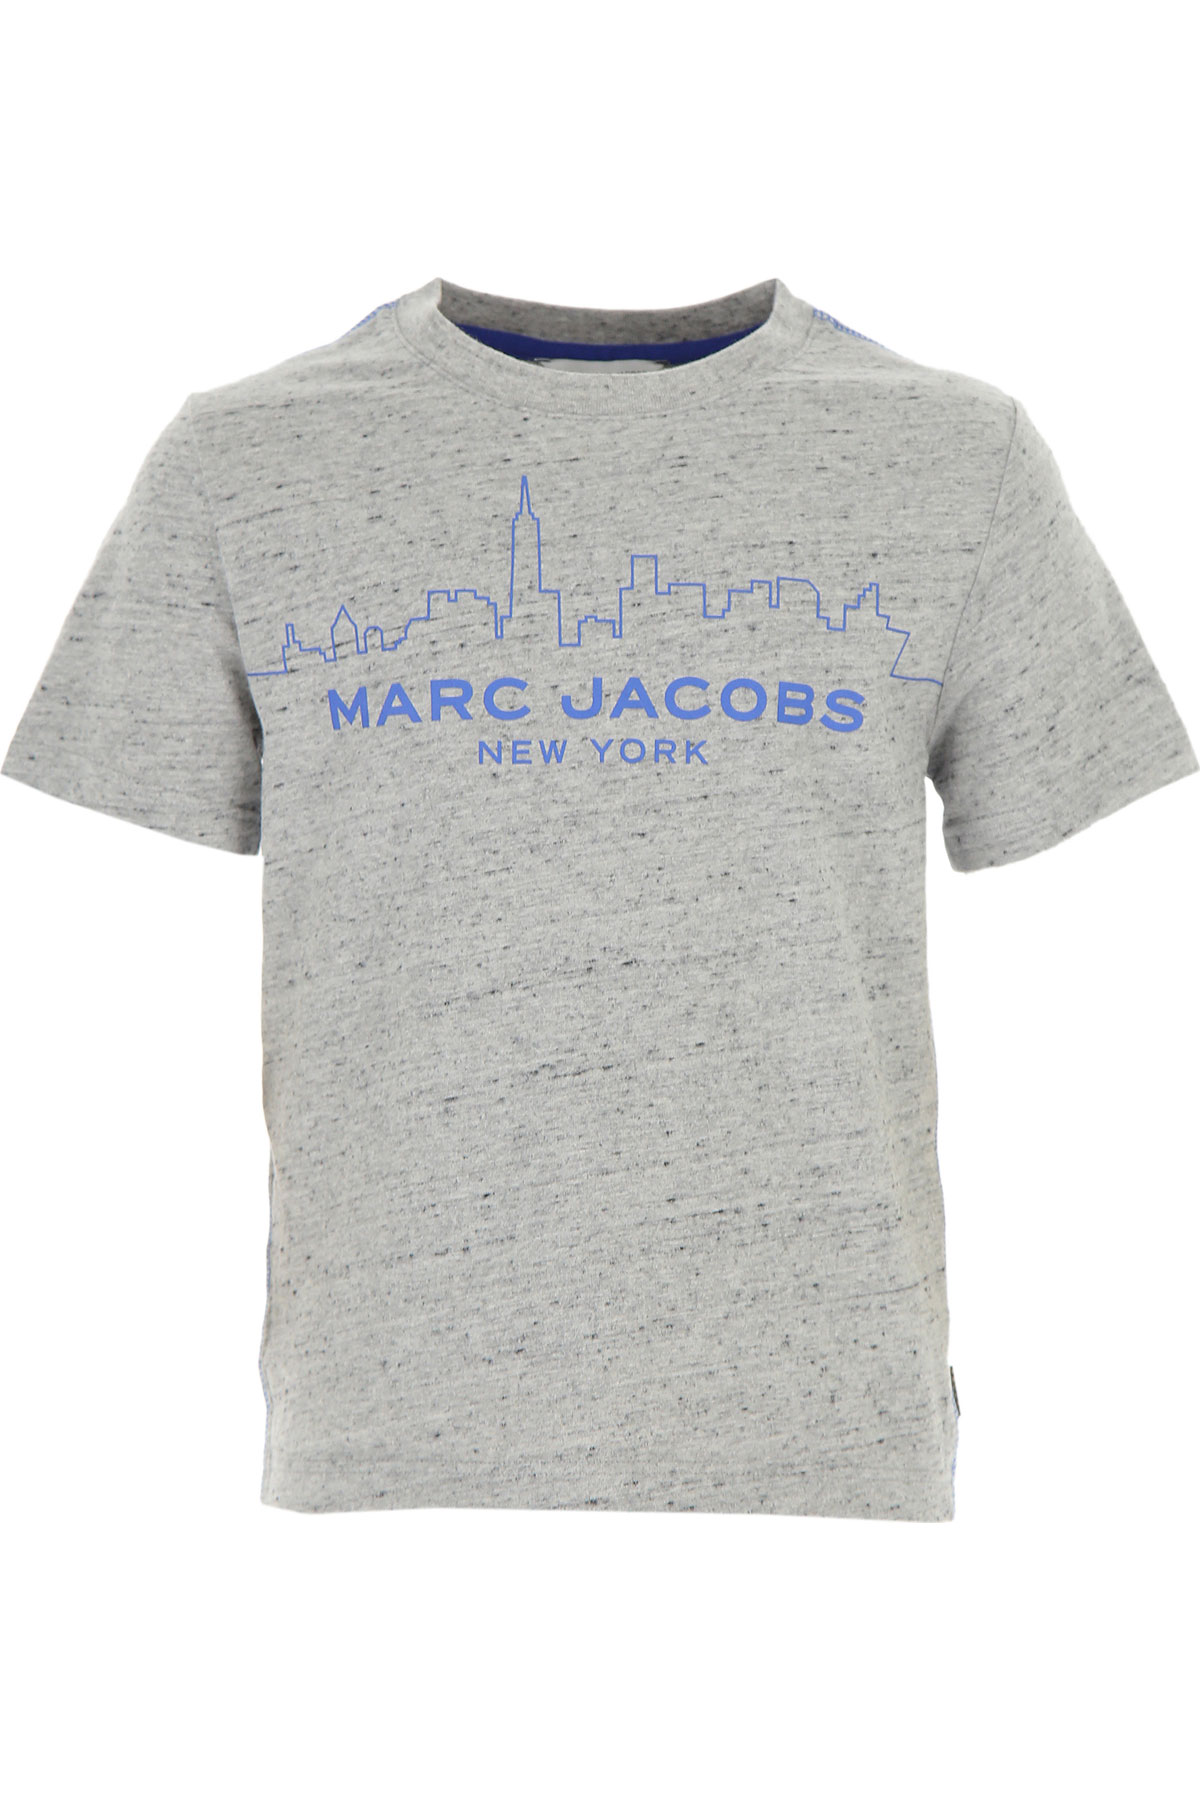 Marc Jacobs Kinder T-Shirt für Jungen Günstig im Sale, Grau, Baumwolle, 2017, 2Y 3Y 5Y 6Y 8Y